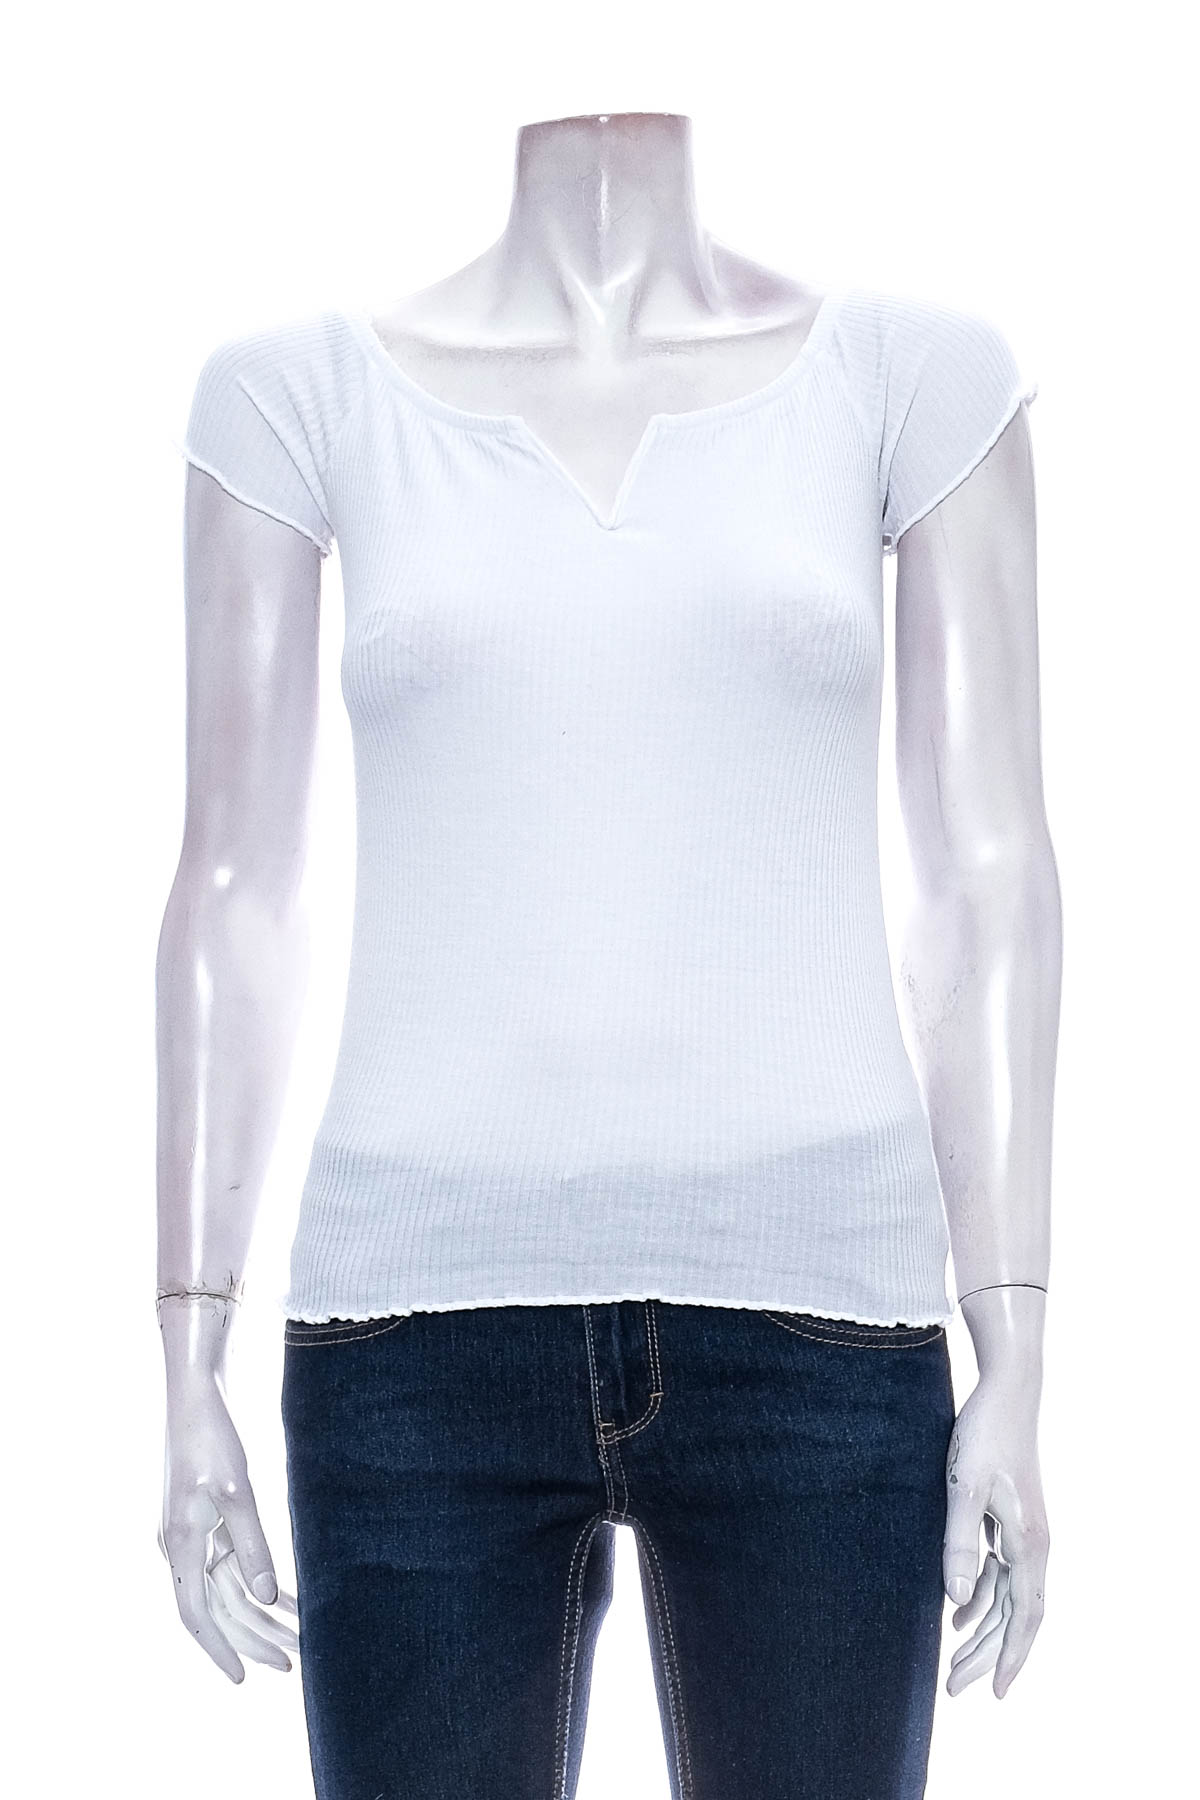 Γυναικεία μπλούζα - Pimkie - 0